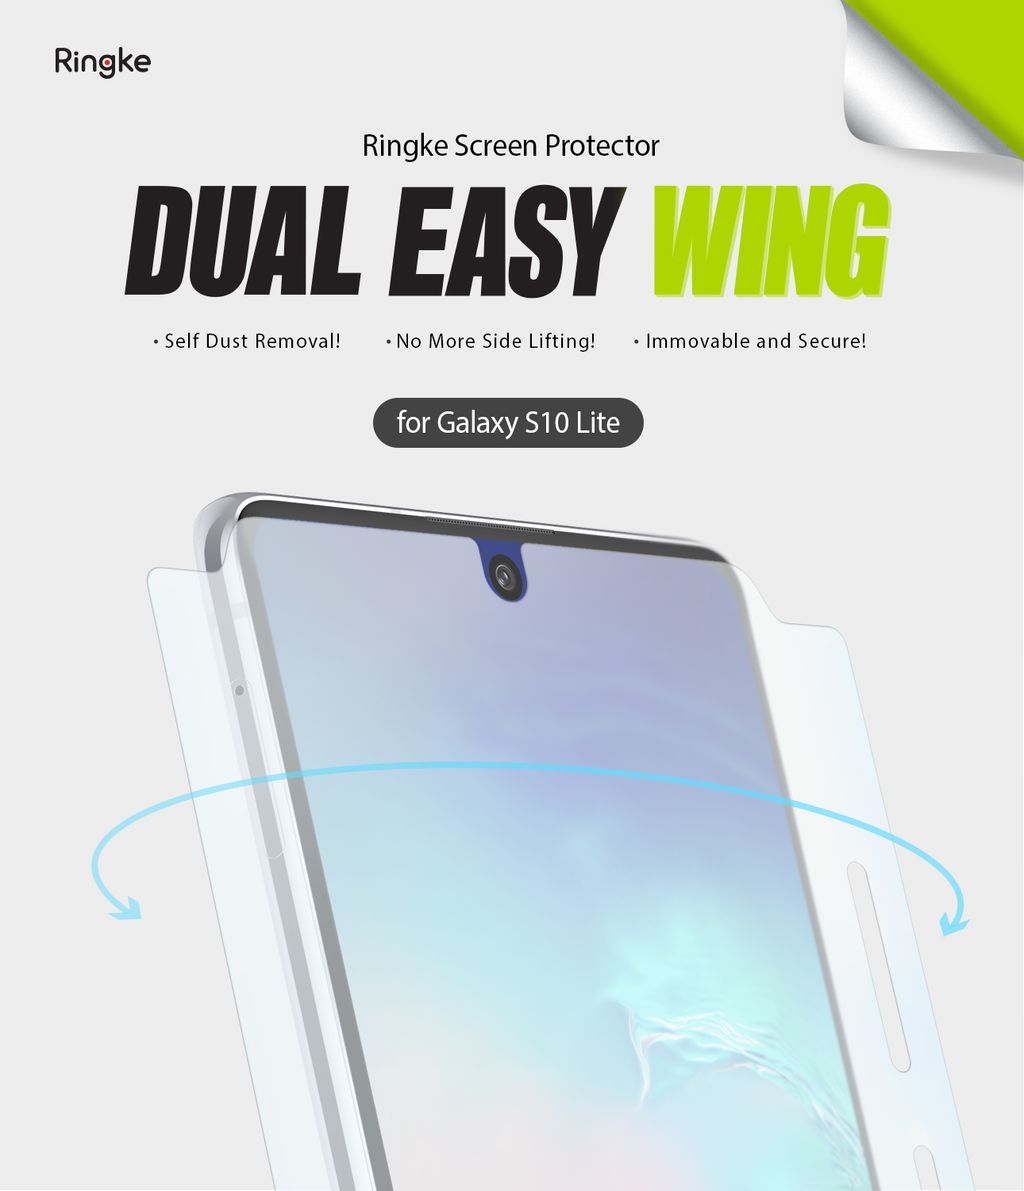 Ringke_Dual_Easy_Wing_Galaxy_S10_Lite_sub_thum_main.jpg